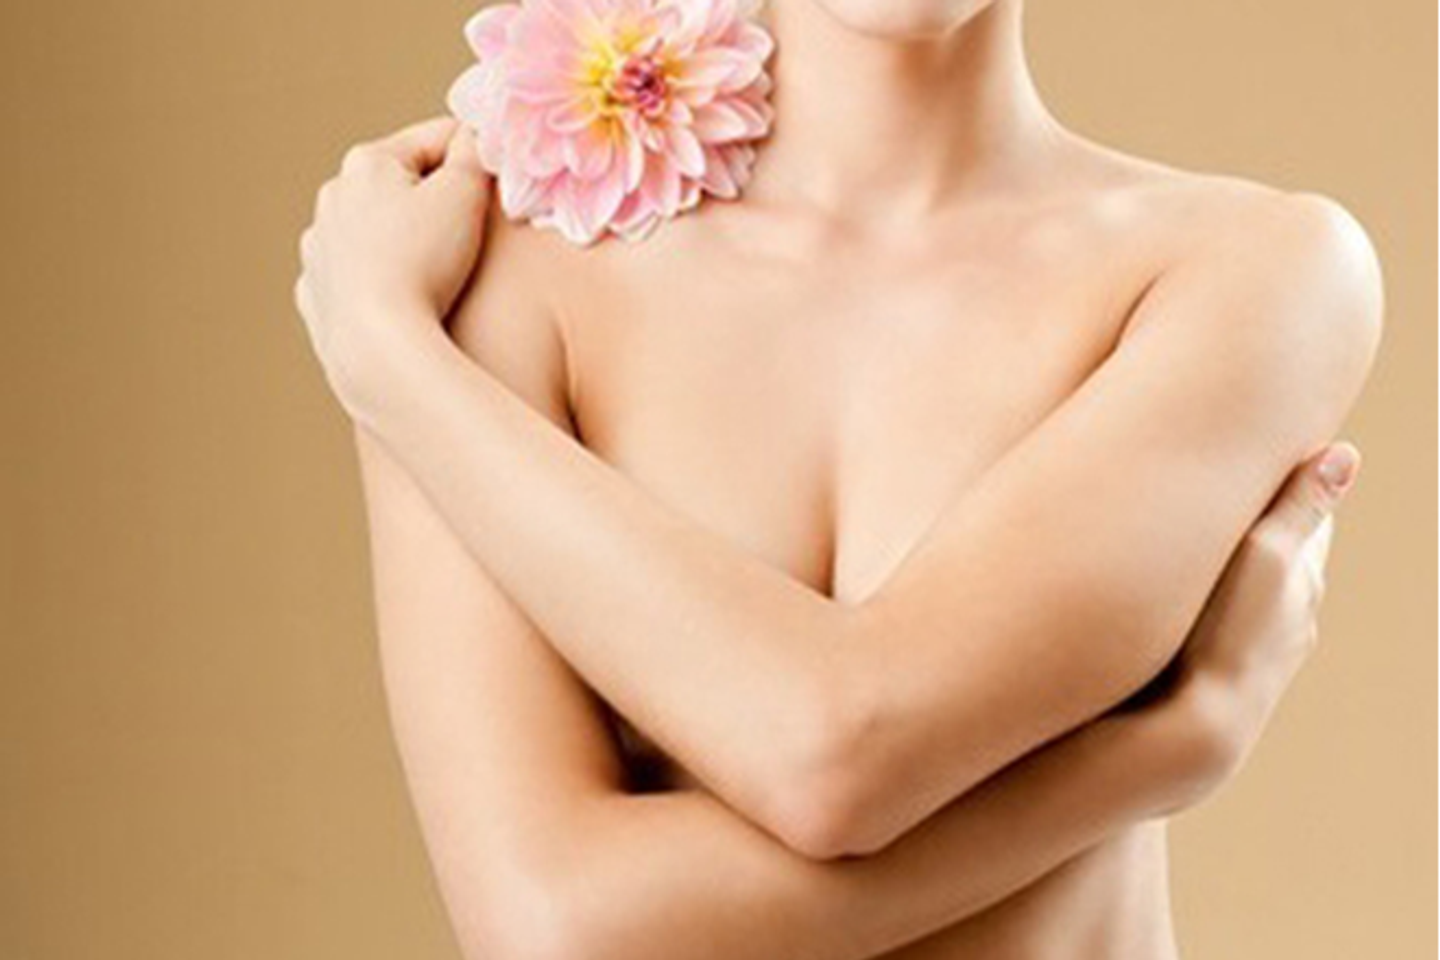 Prettiean giúp làm hồng nhũ hoa và cải thiện sắc da tại các vùng kín